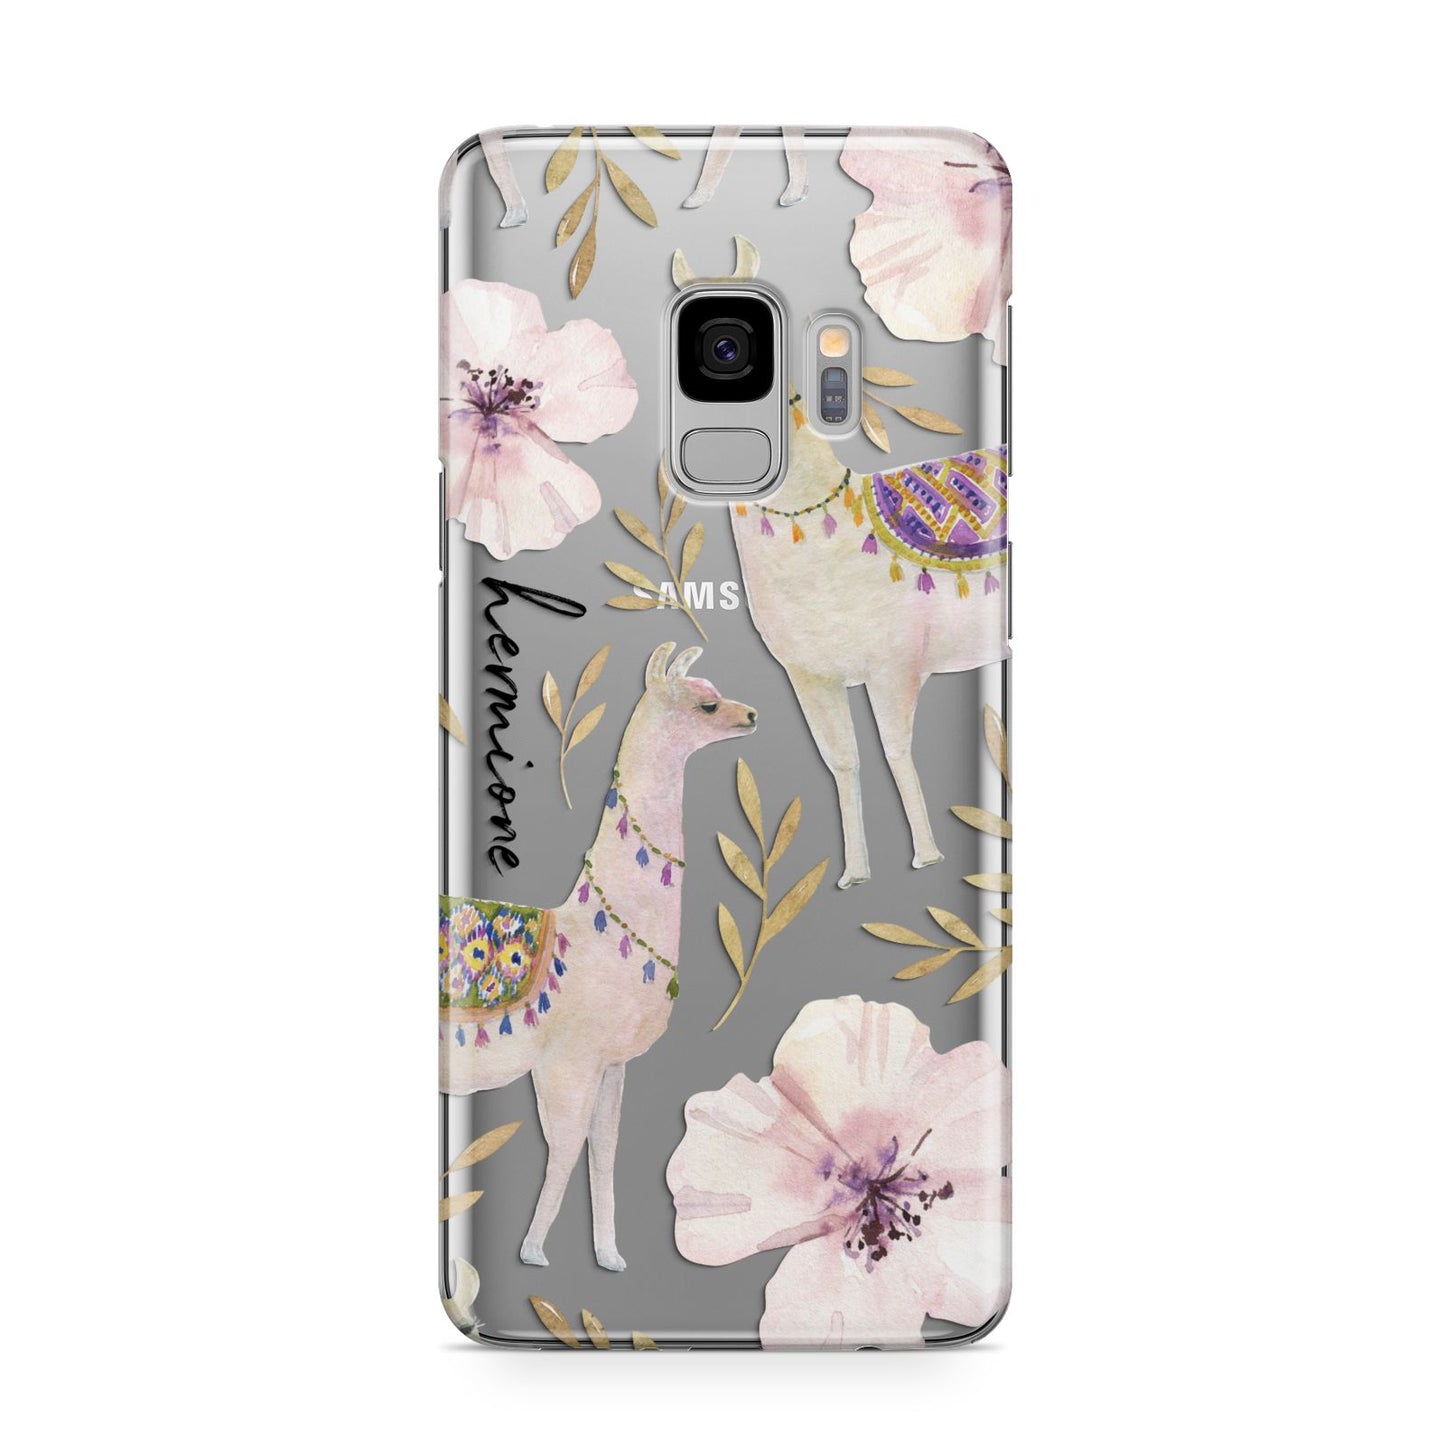 Personalised Llamas Samsung Galaxy S9 Case